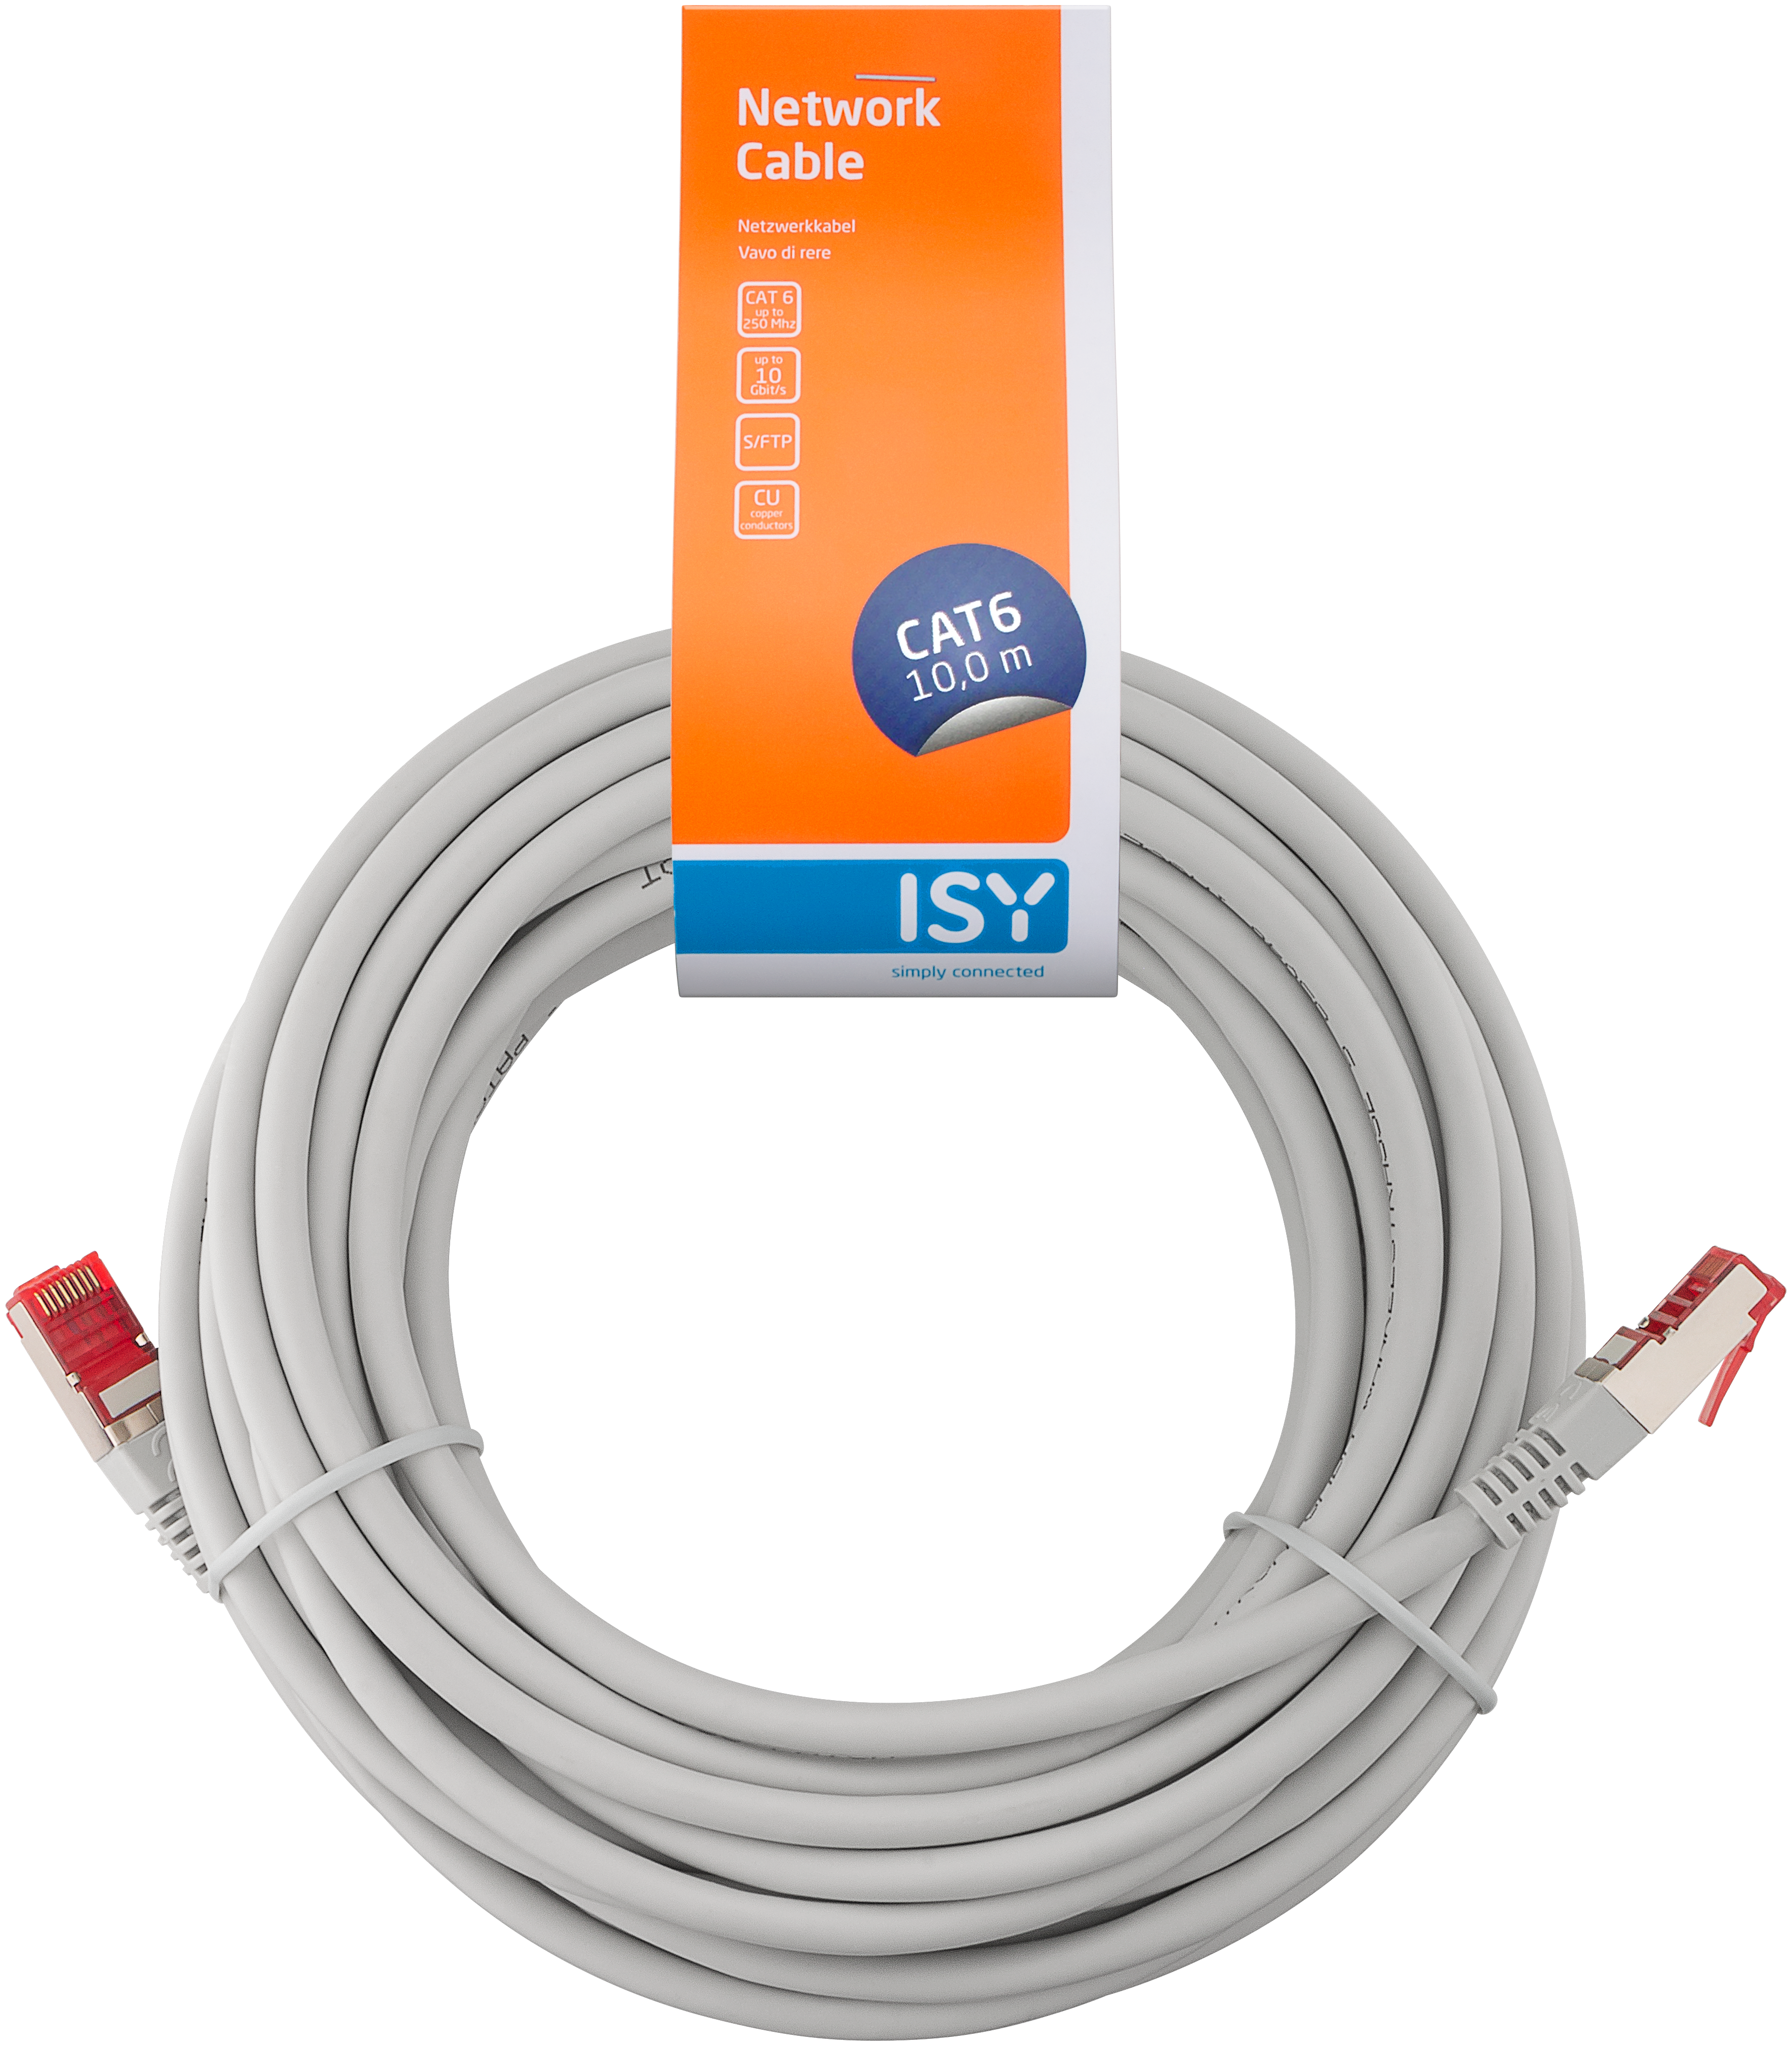 ISY IPC 6100 1, Netzwerkkabel, 10 m